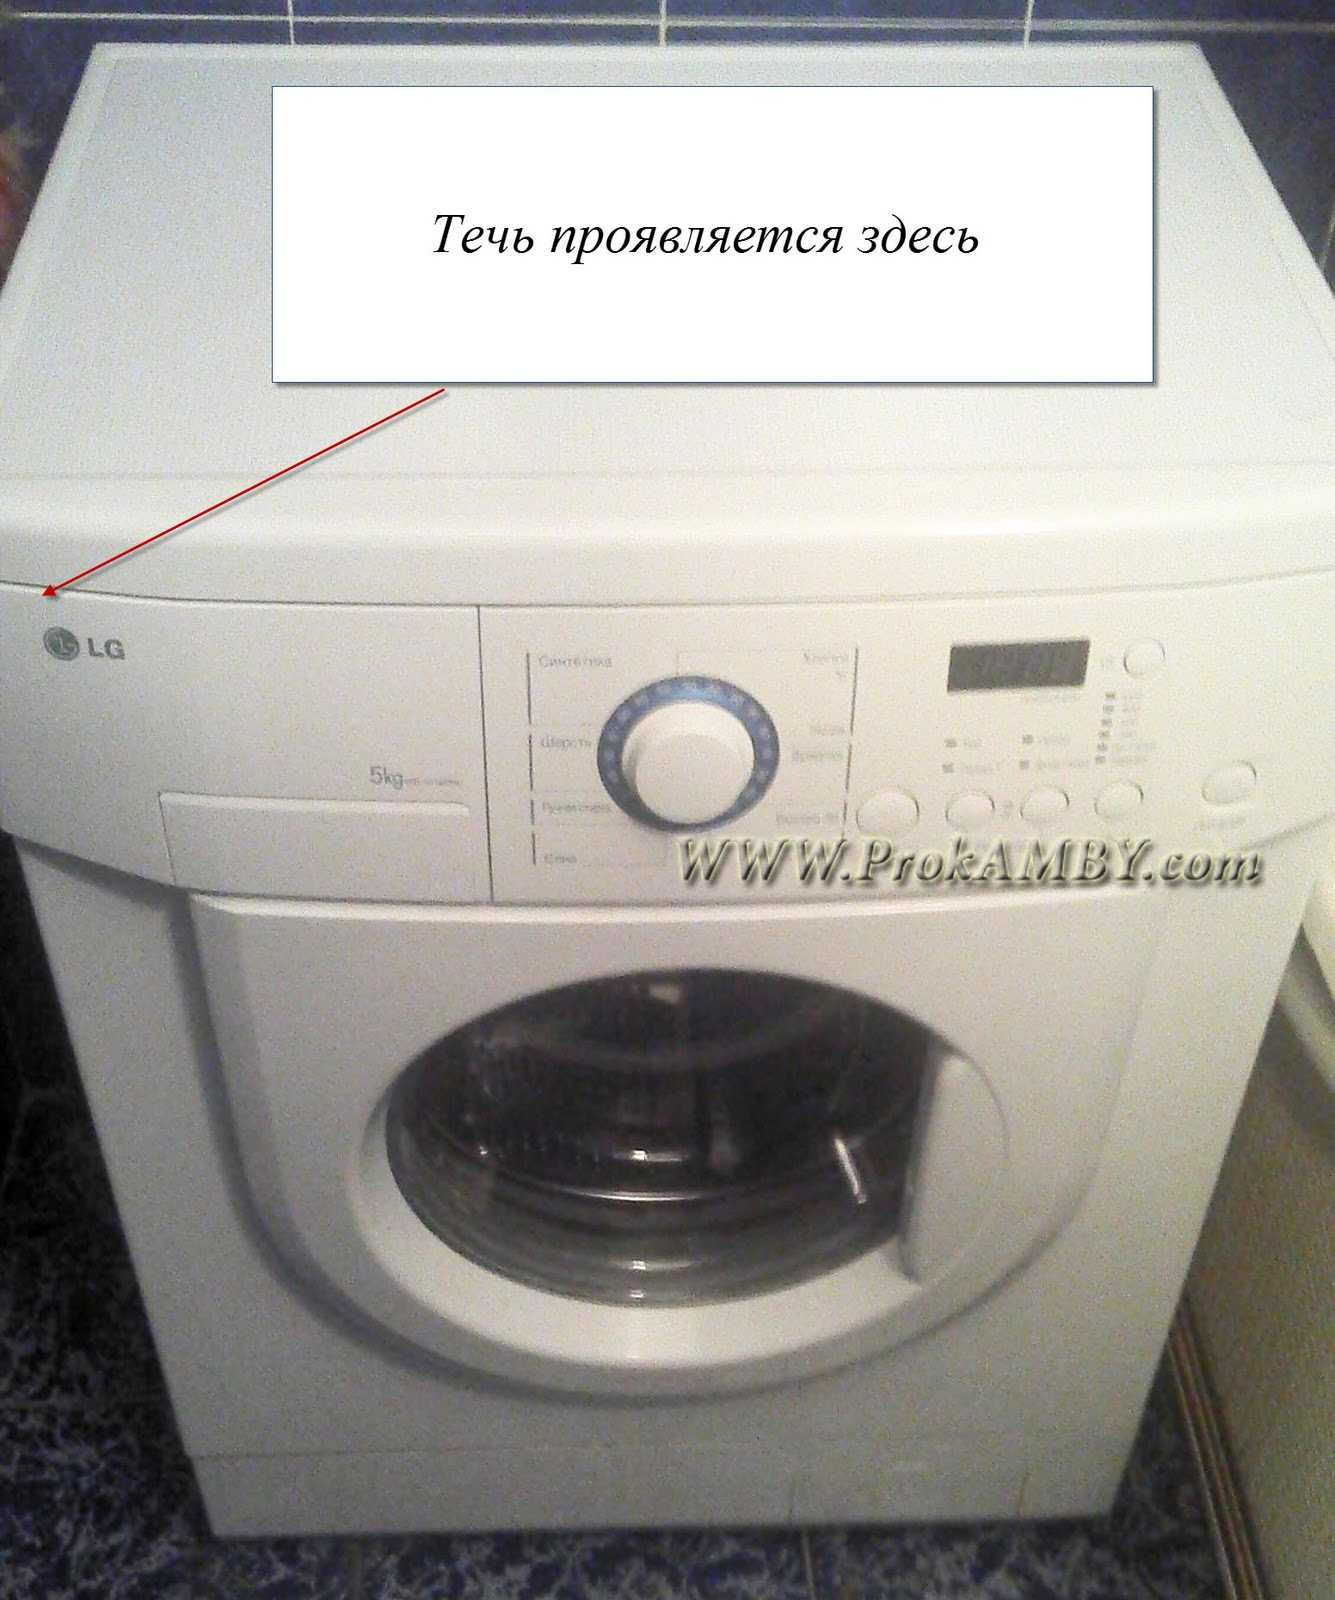 Почему стиральная машина lg набирает воду и сразу сливает?